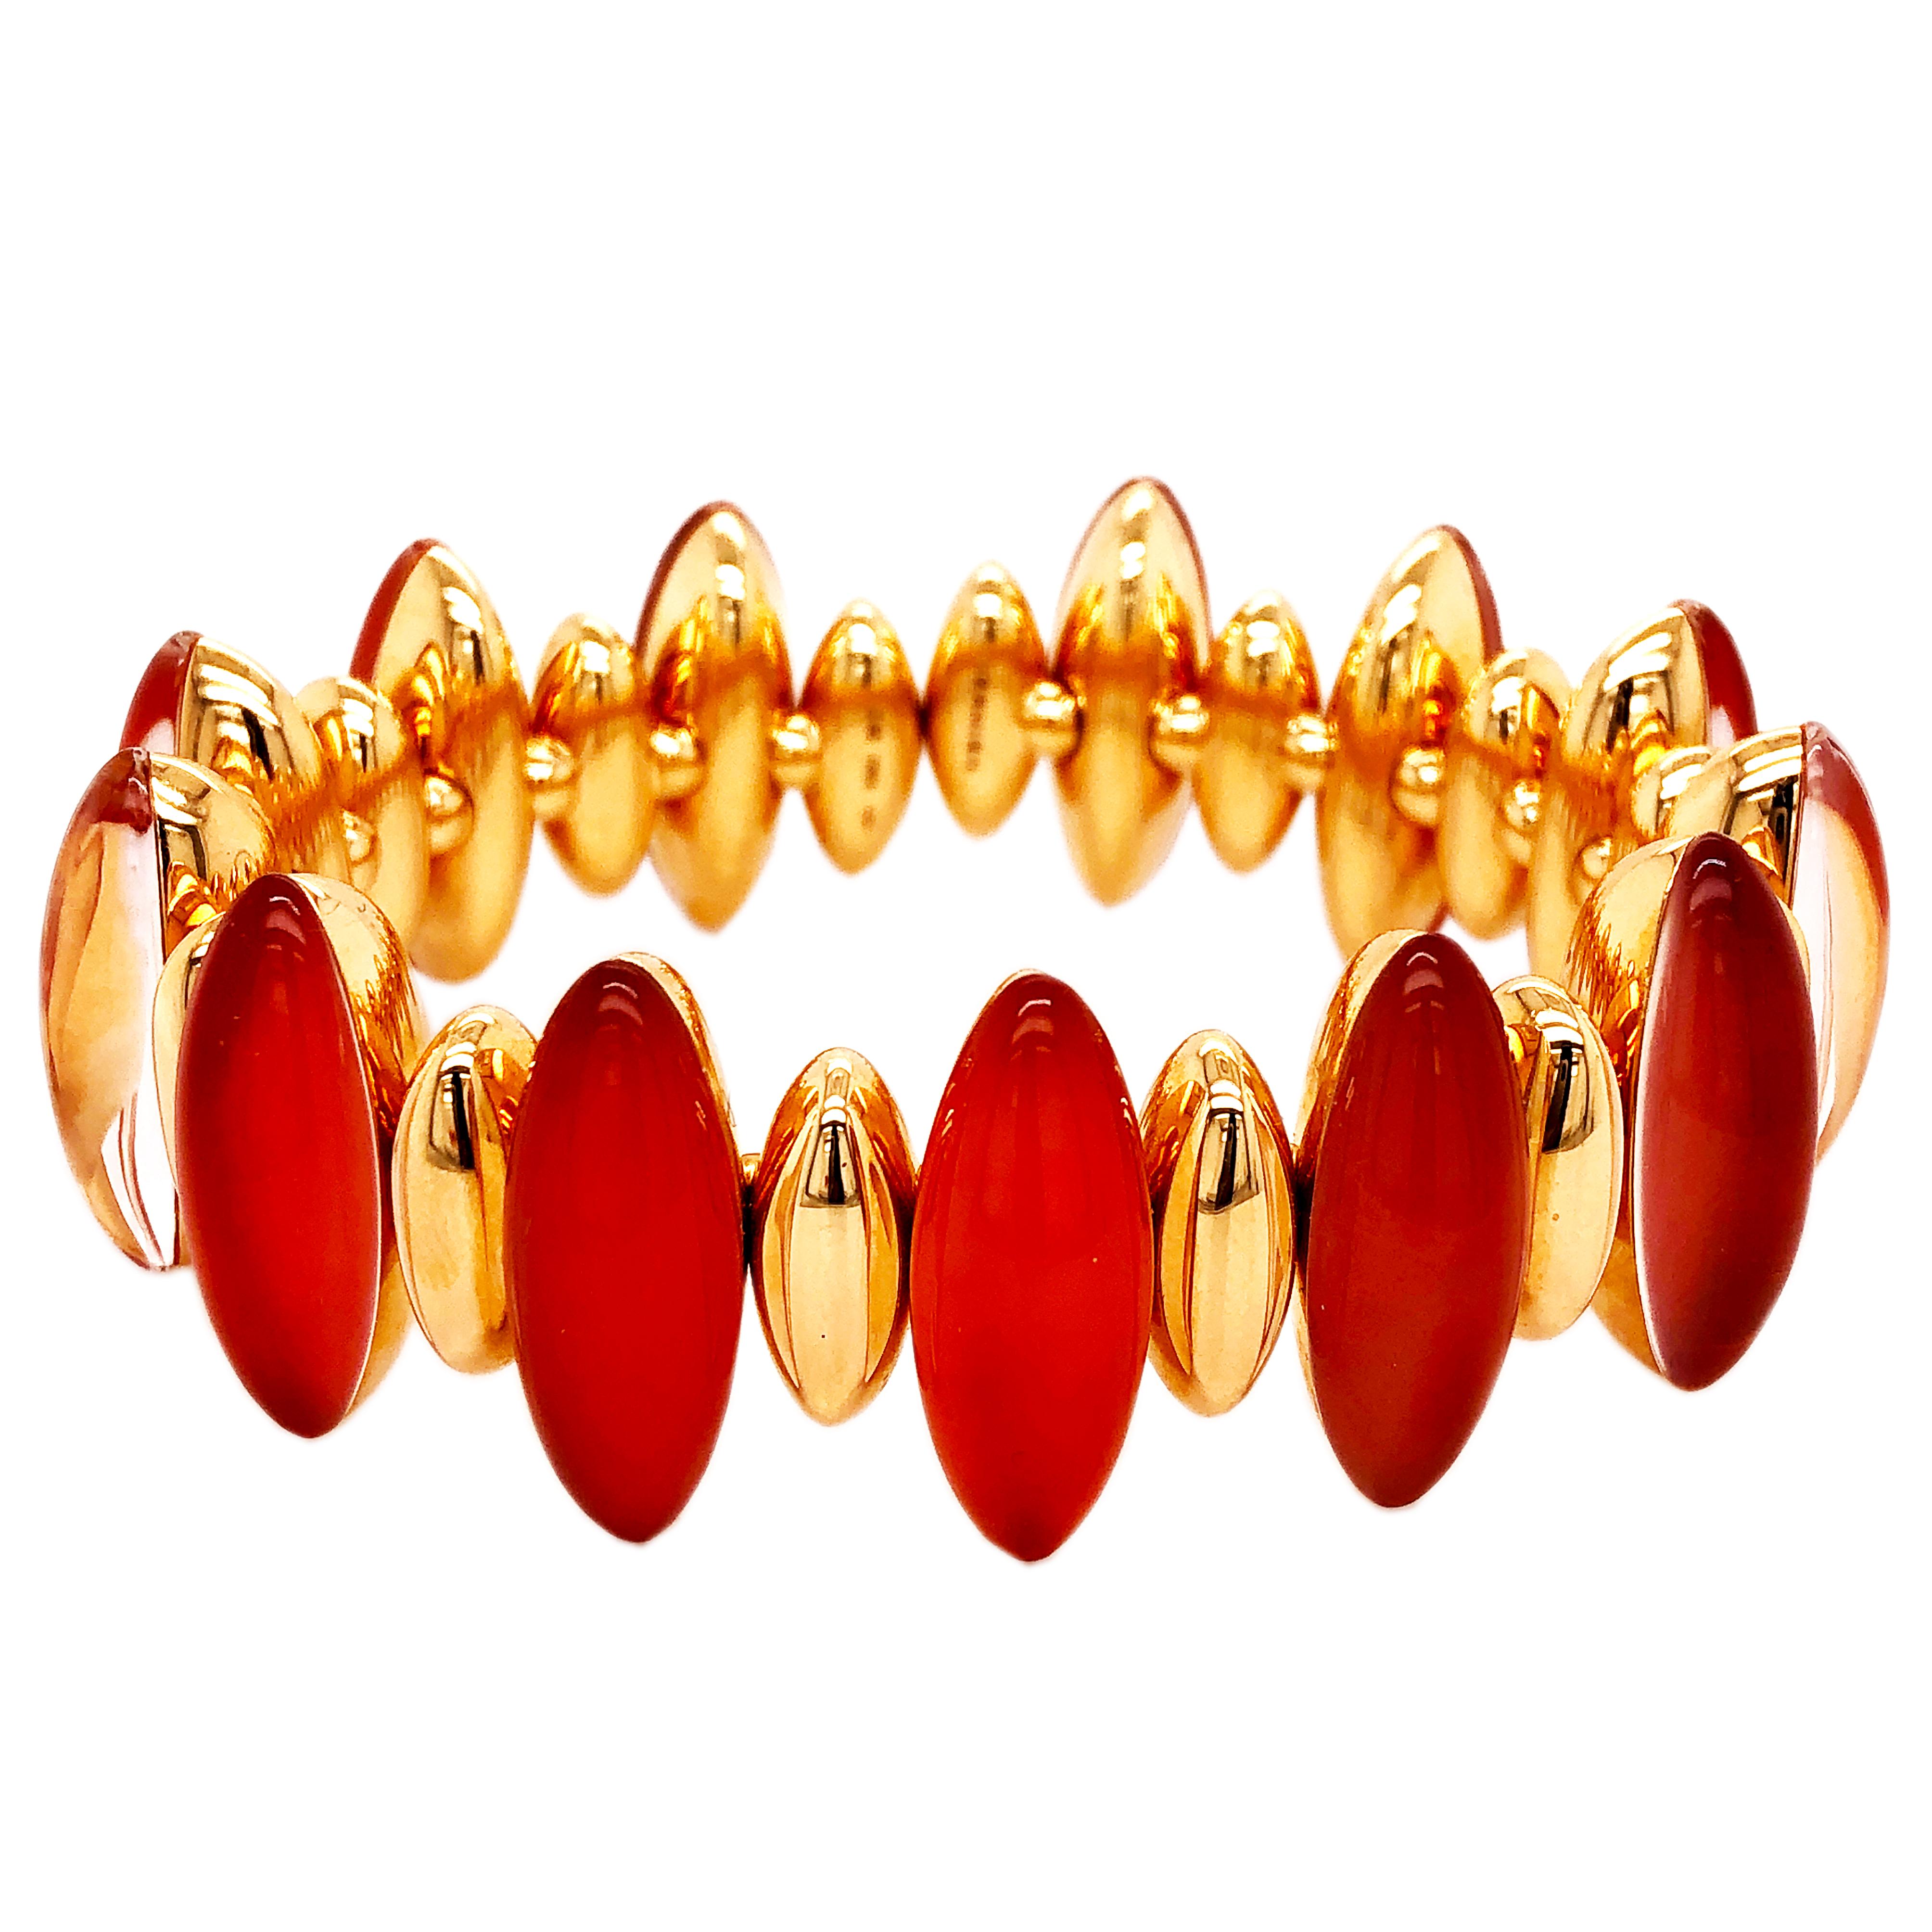 Absolument chic et intemporel, ce bracelet extraordinaire associe un cabochon de cristal de roche cornaline rouge à de l'or rose étincelant. Ces Fuseaux contemporains nous rappellent le conte de fées de la Belle au bois dormant, des volumes allongés